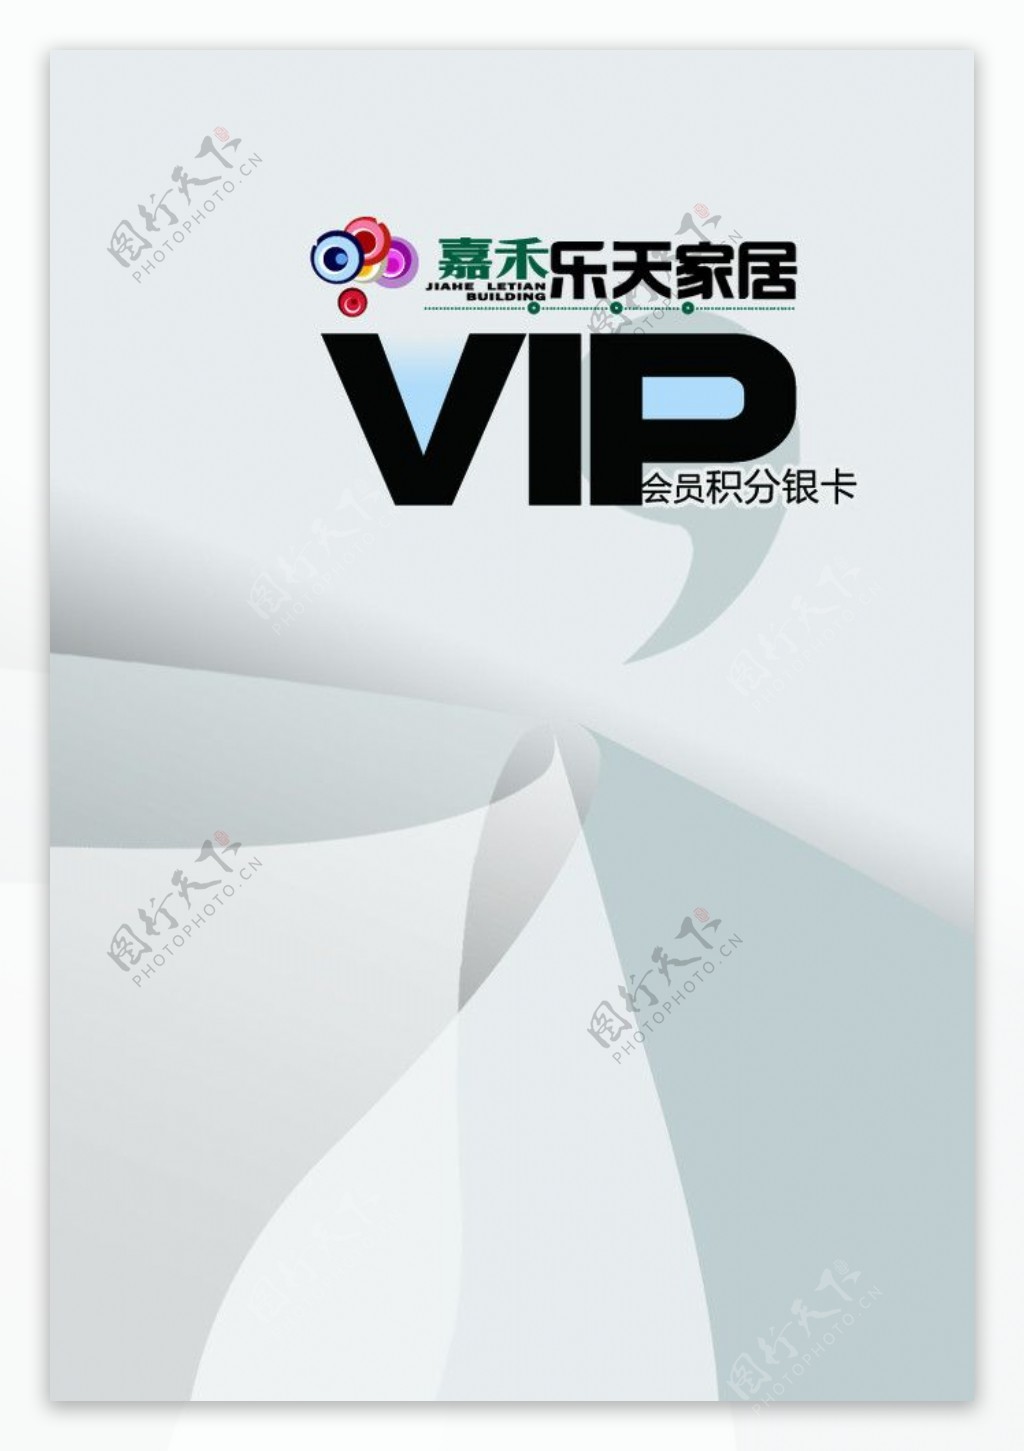 VIP会员积分卡图片